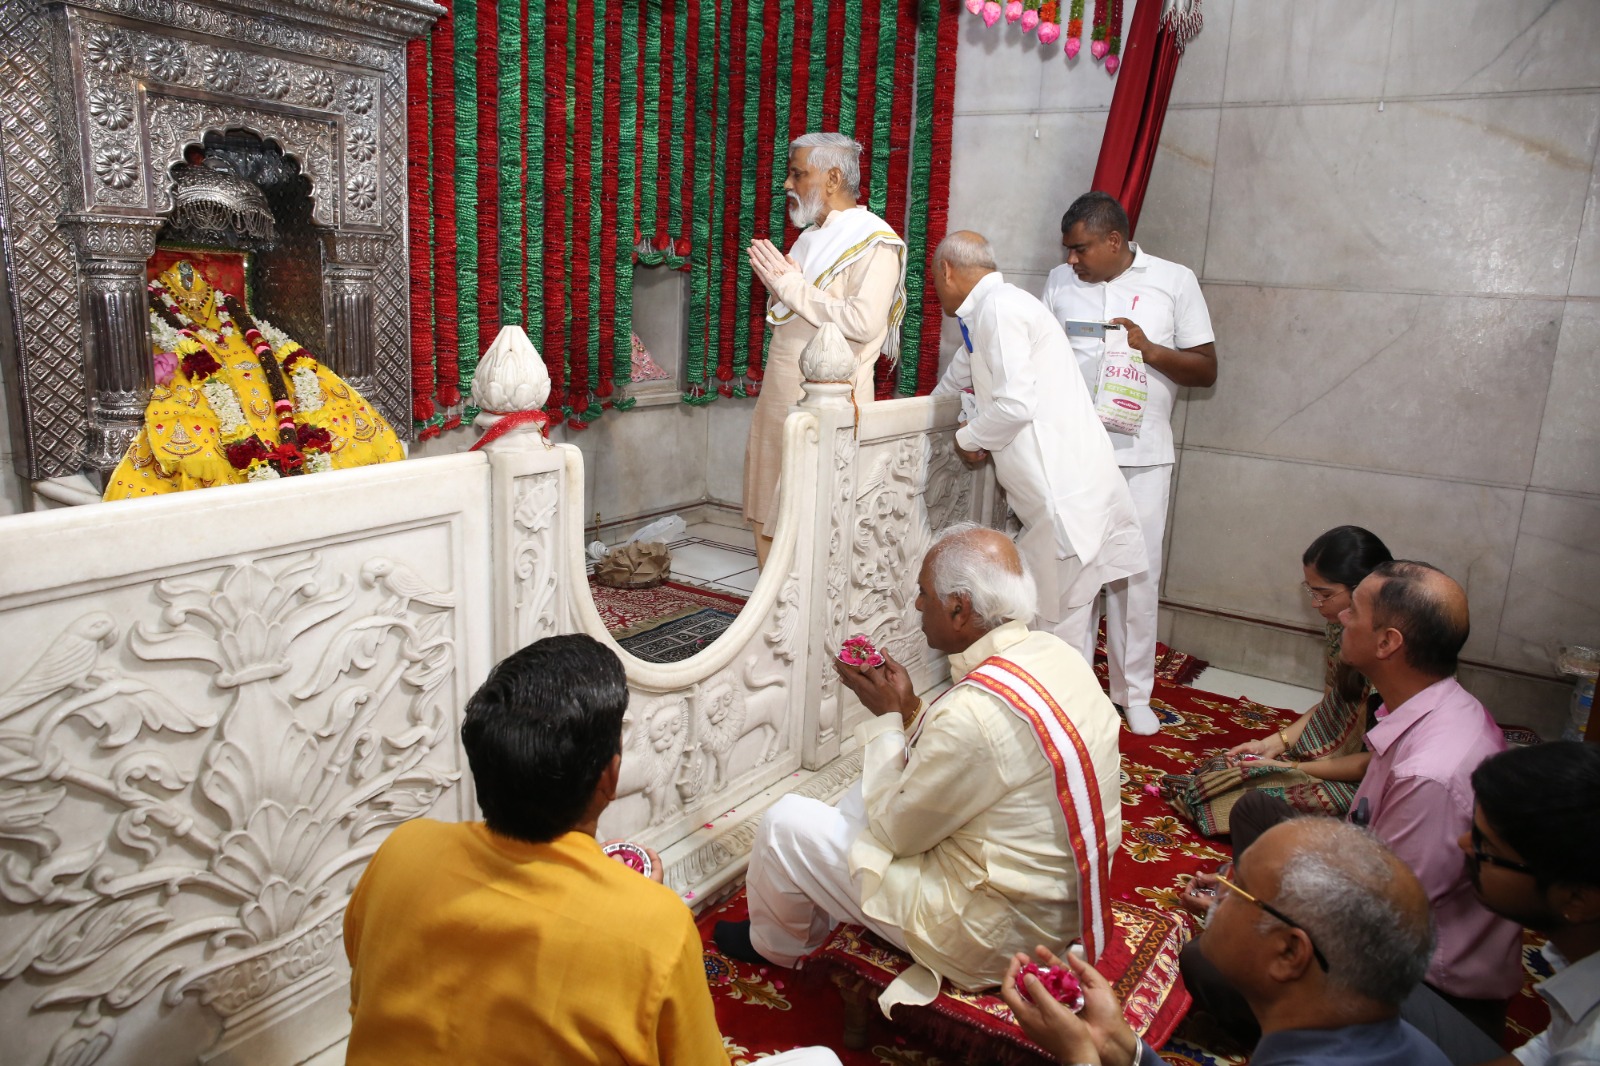 बेरी स्थित माता भीमेश्वरी देवी मंदिर में पूजा अर्चना करते हरियाणा के राज्यपाल बंडारू दत्तात्रेय।